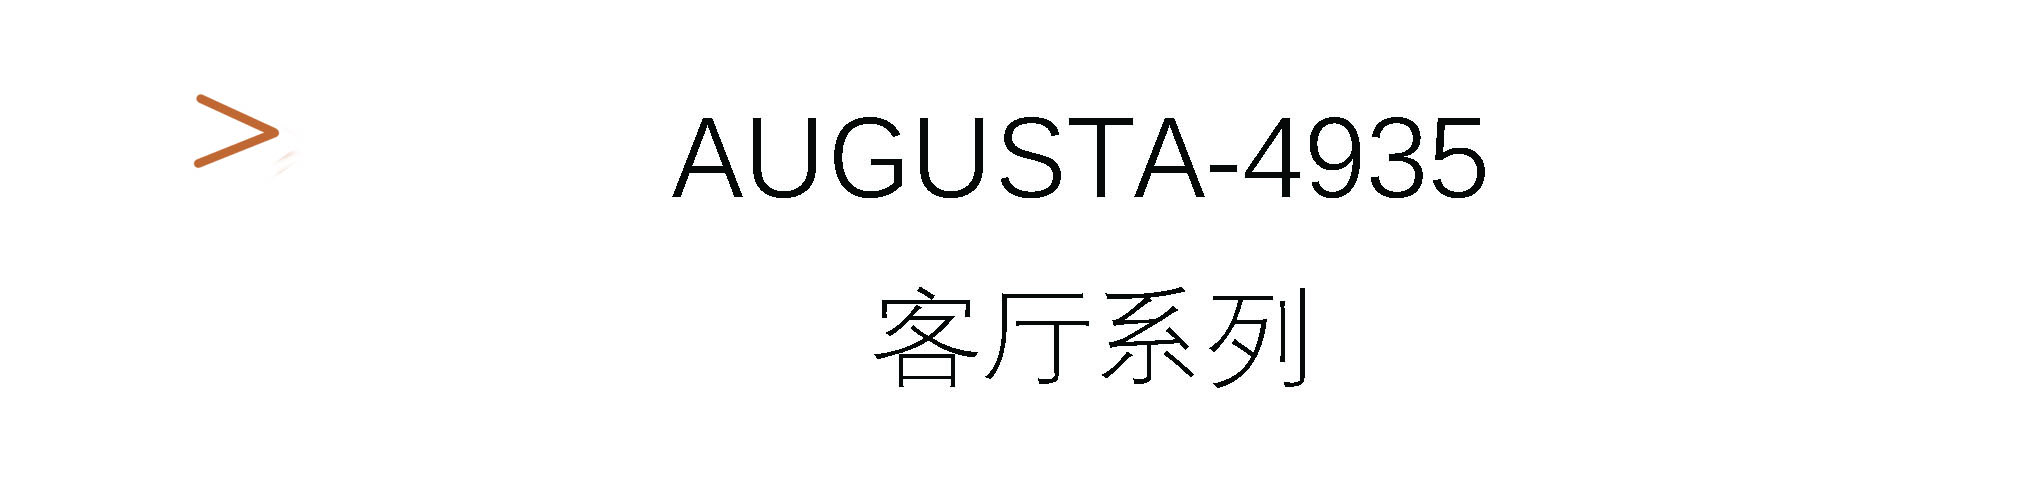 Augusta-4935